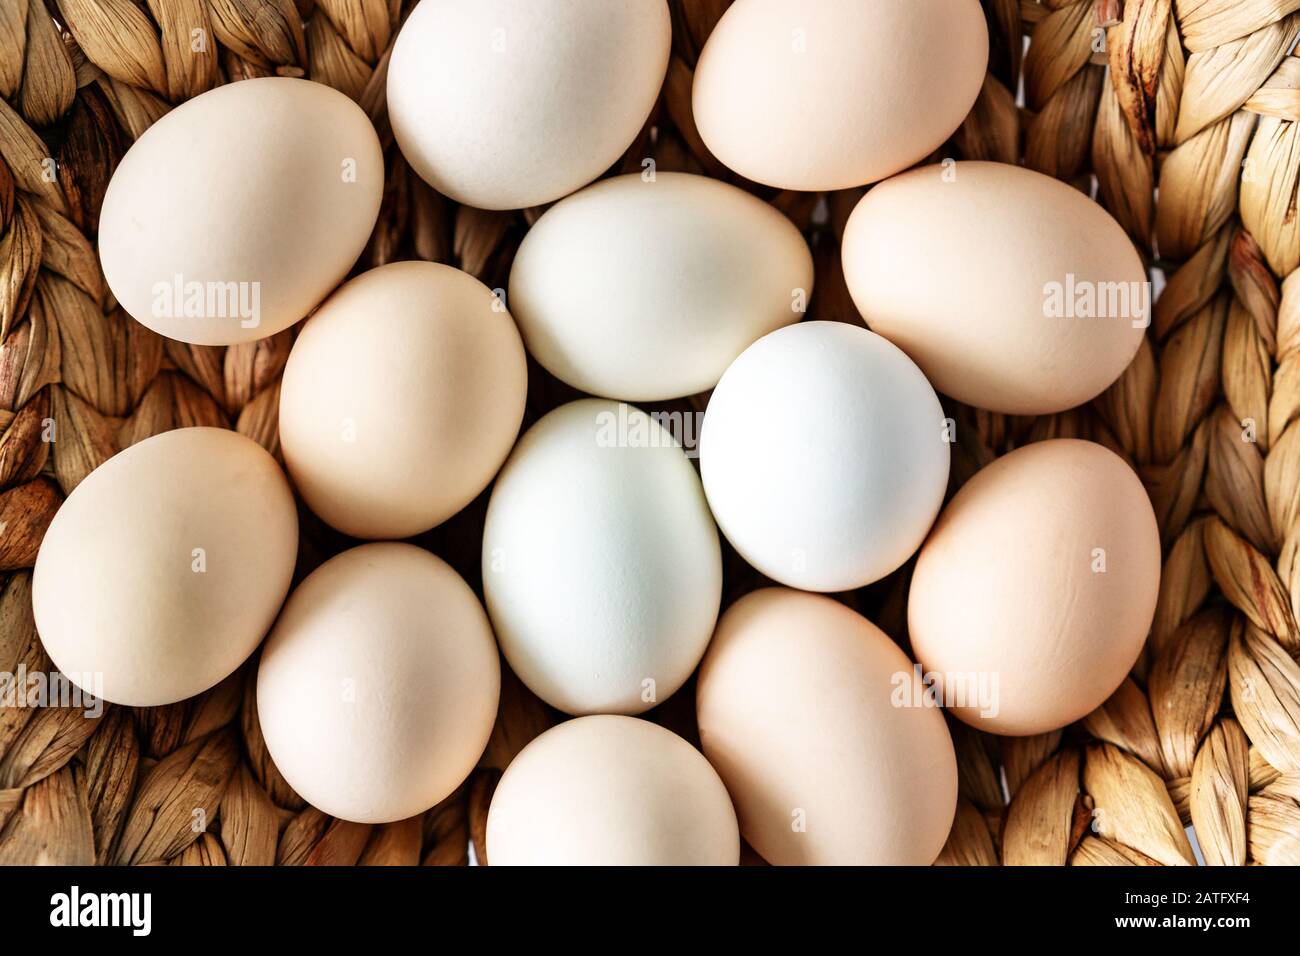 Des œufs frais de chiken biologiques de ferme dans un panier sur fond de blanita. Alimentation saine naturelle et agriculture biologique, concept de pâques. Banque D'Images